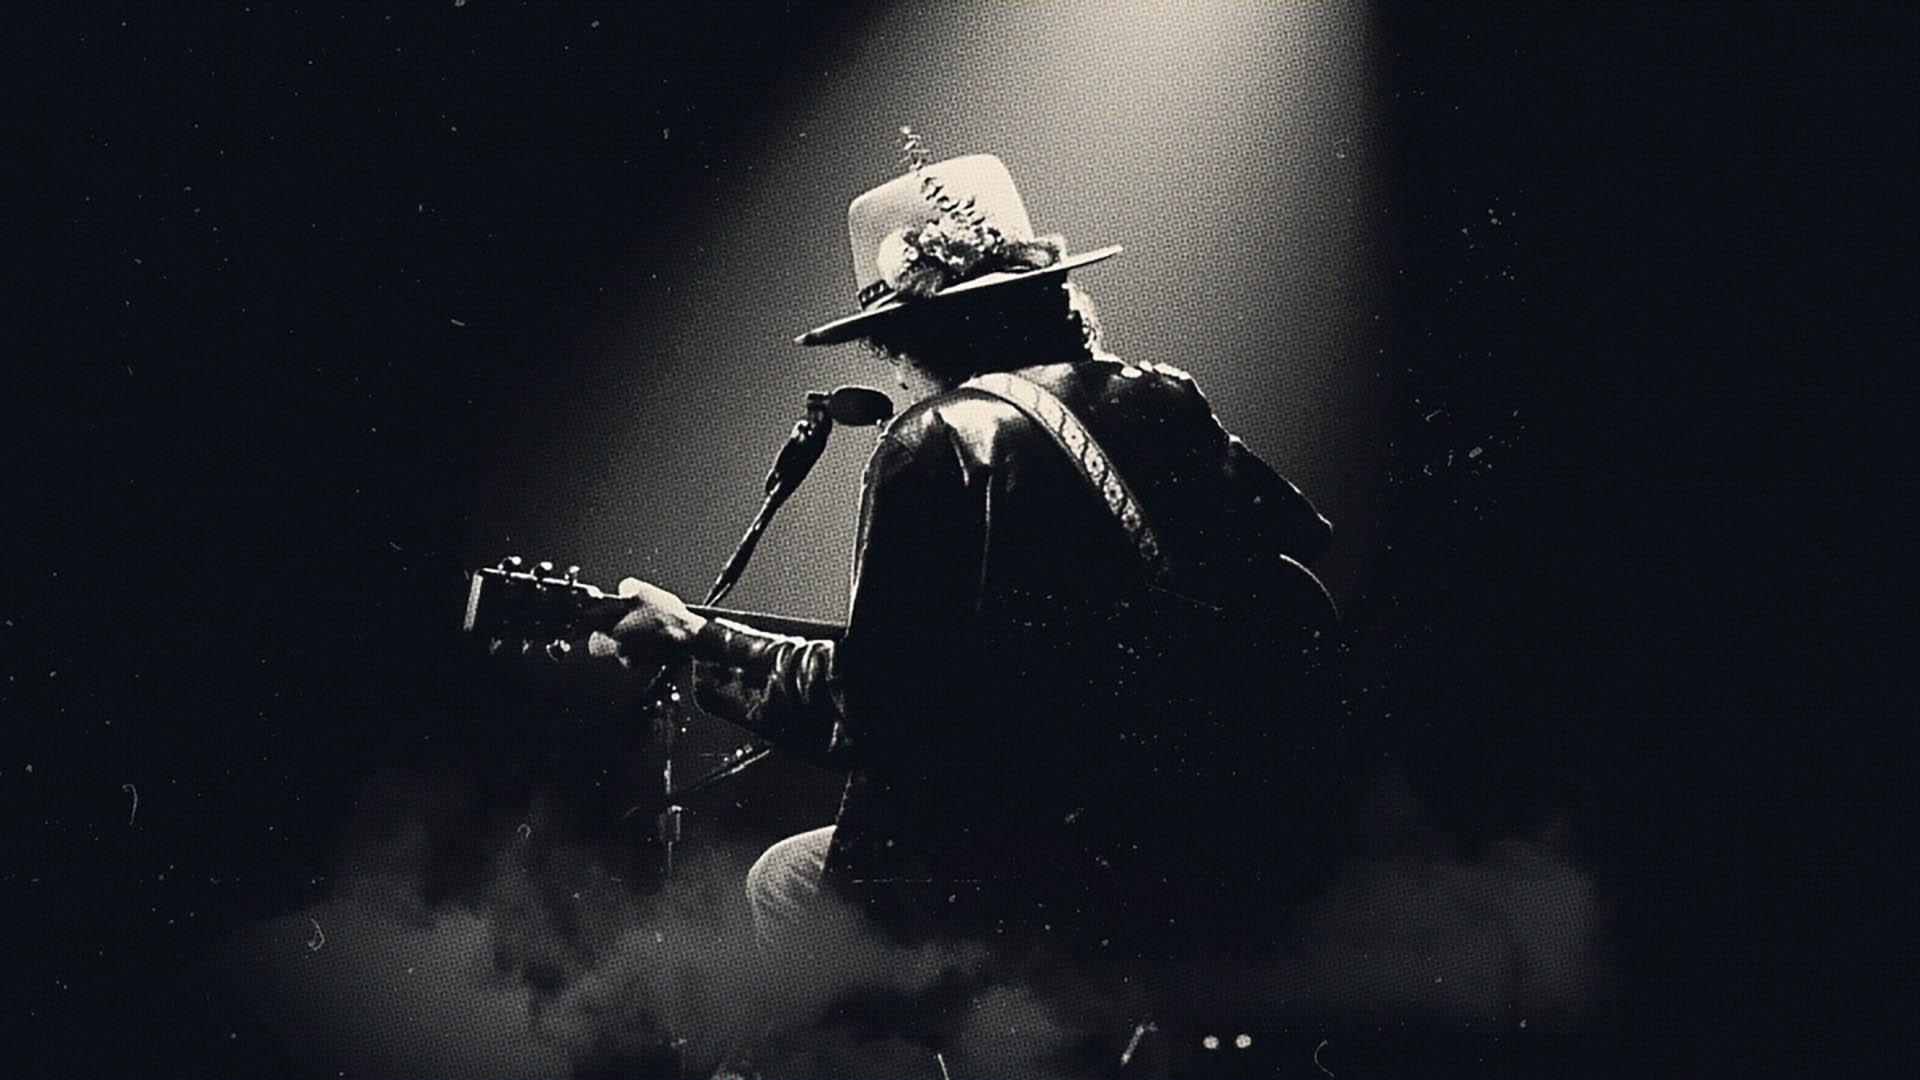 باب دیلن در اجرایی در تور جهانی Rolling Thunder Revue در مستند اسکورسیزی